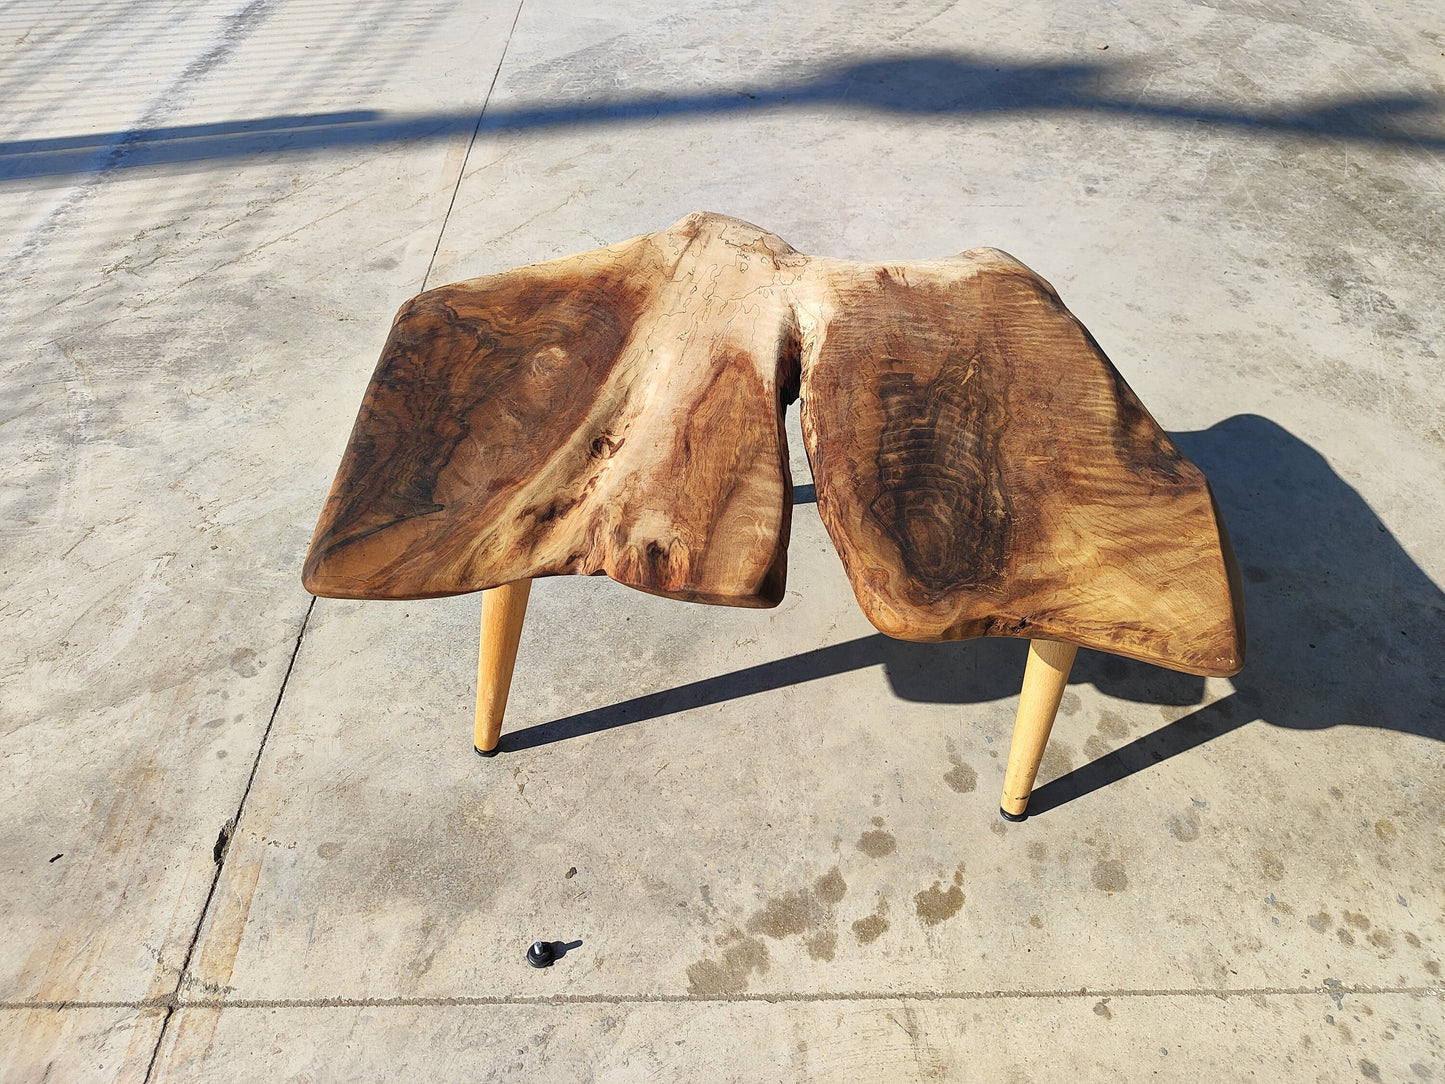 Rustieke handgemaakte houten salontafel - Unieke walnoot (WG-1032)